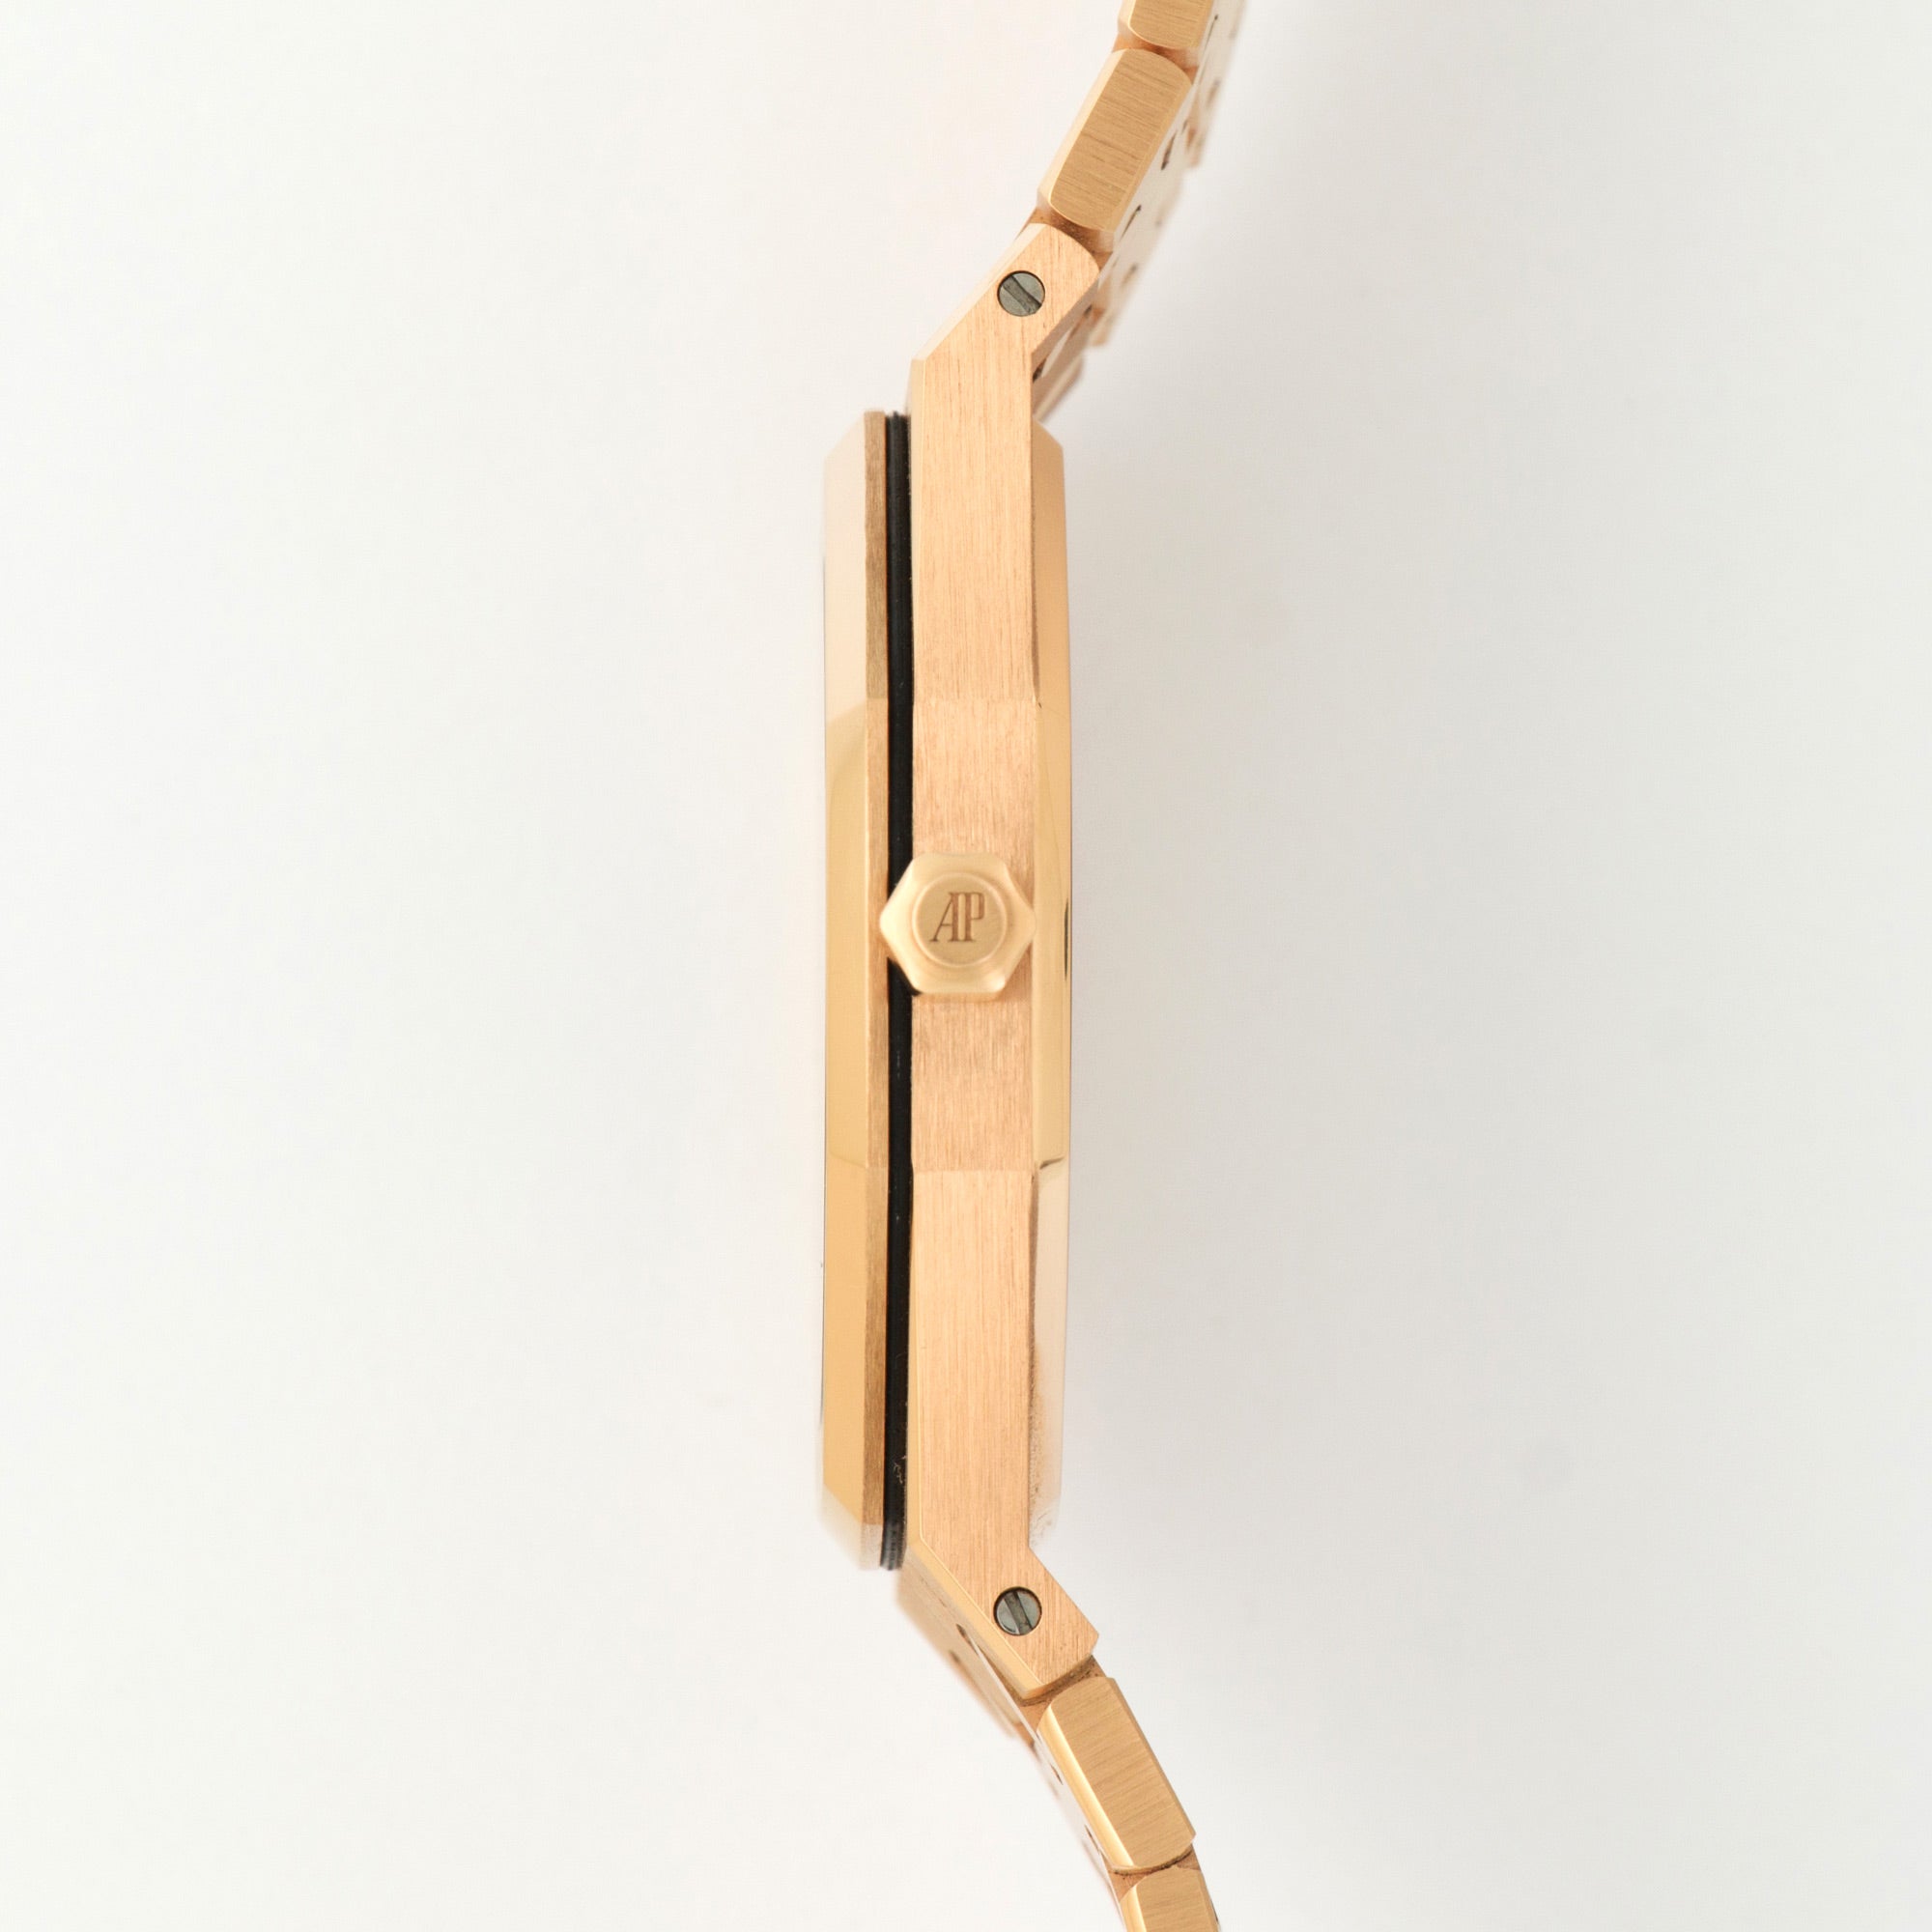 Audemars Piguet - Audemars Piguet Rose Gold Royal Oak Extra-Thin Watch Ref. 15202 - The Keystone Watches